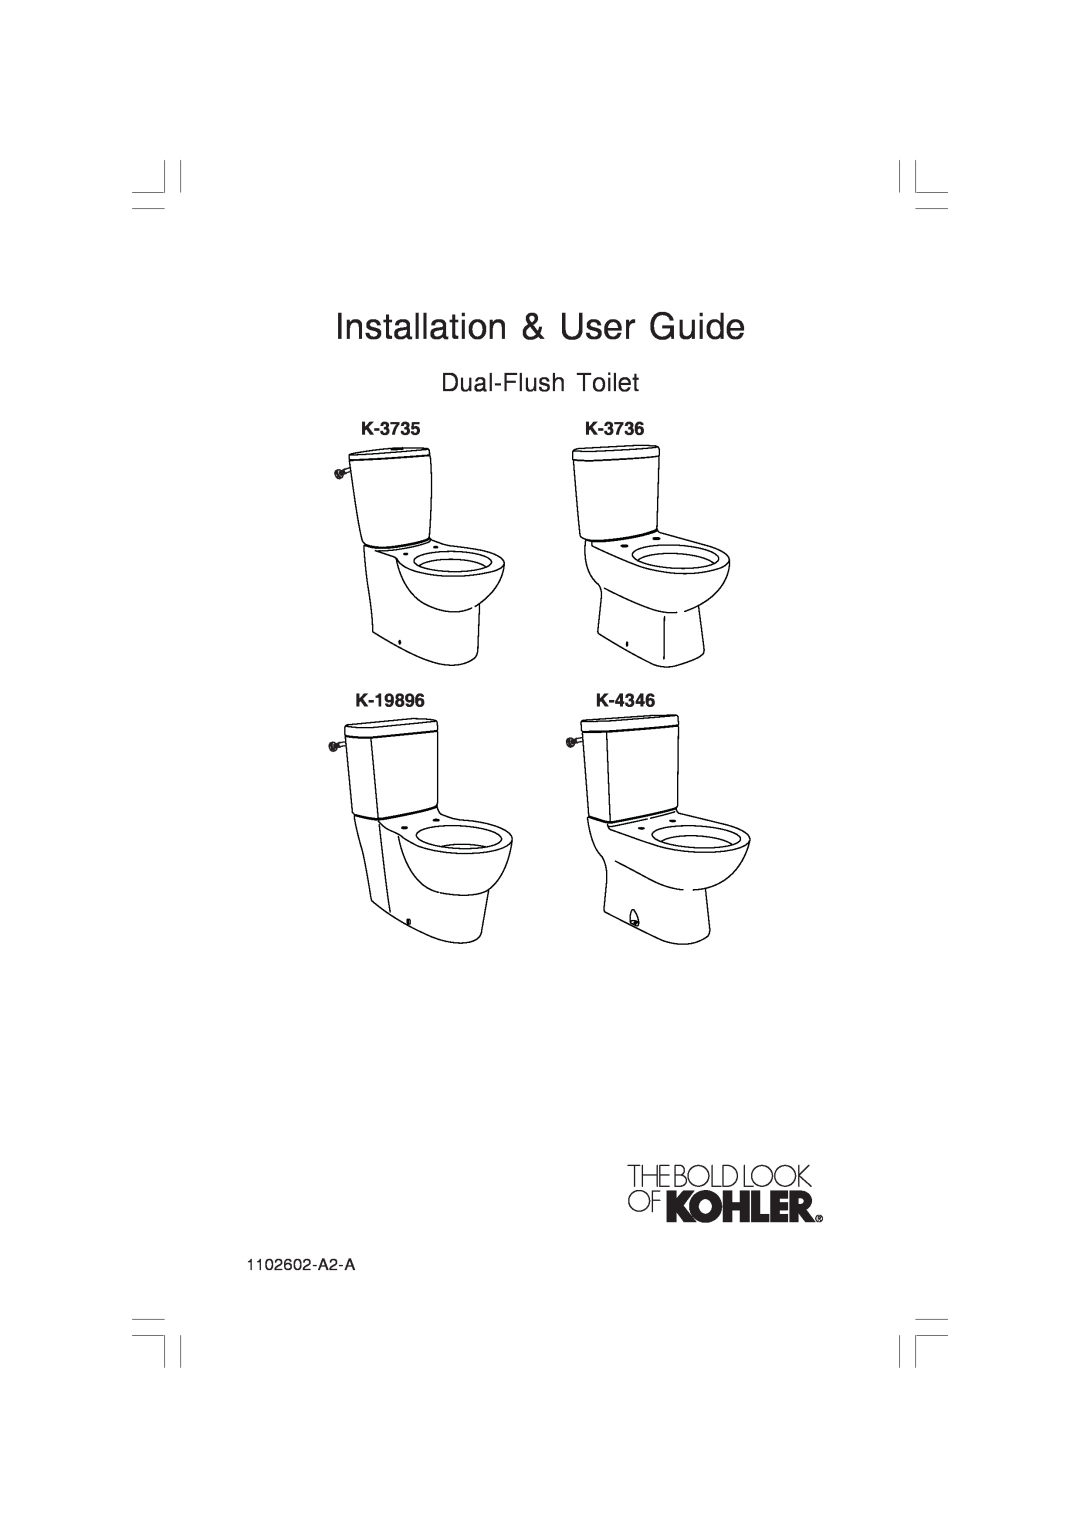 Kohler manual K-3735K-3736 K-19896K-4346, Installation & User Guide, Dual-FlushToilet, 1102602-A2-A 